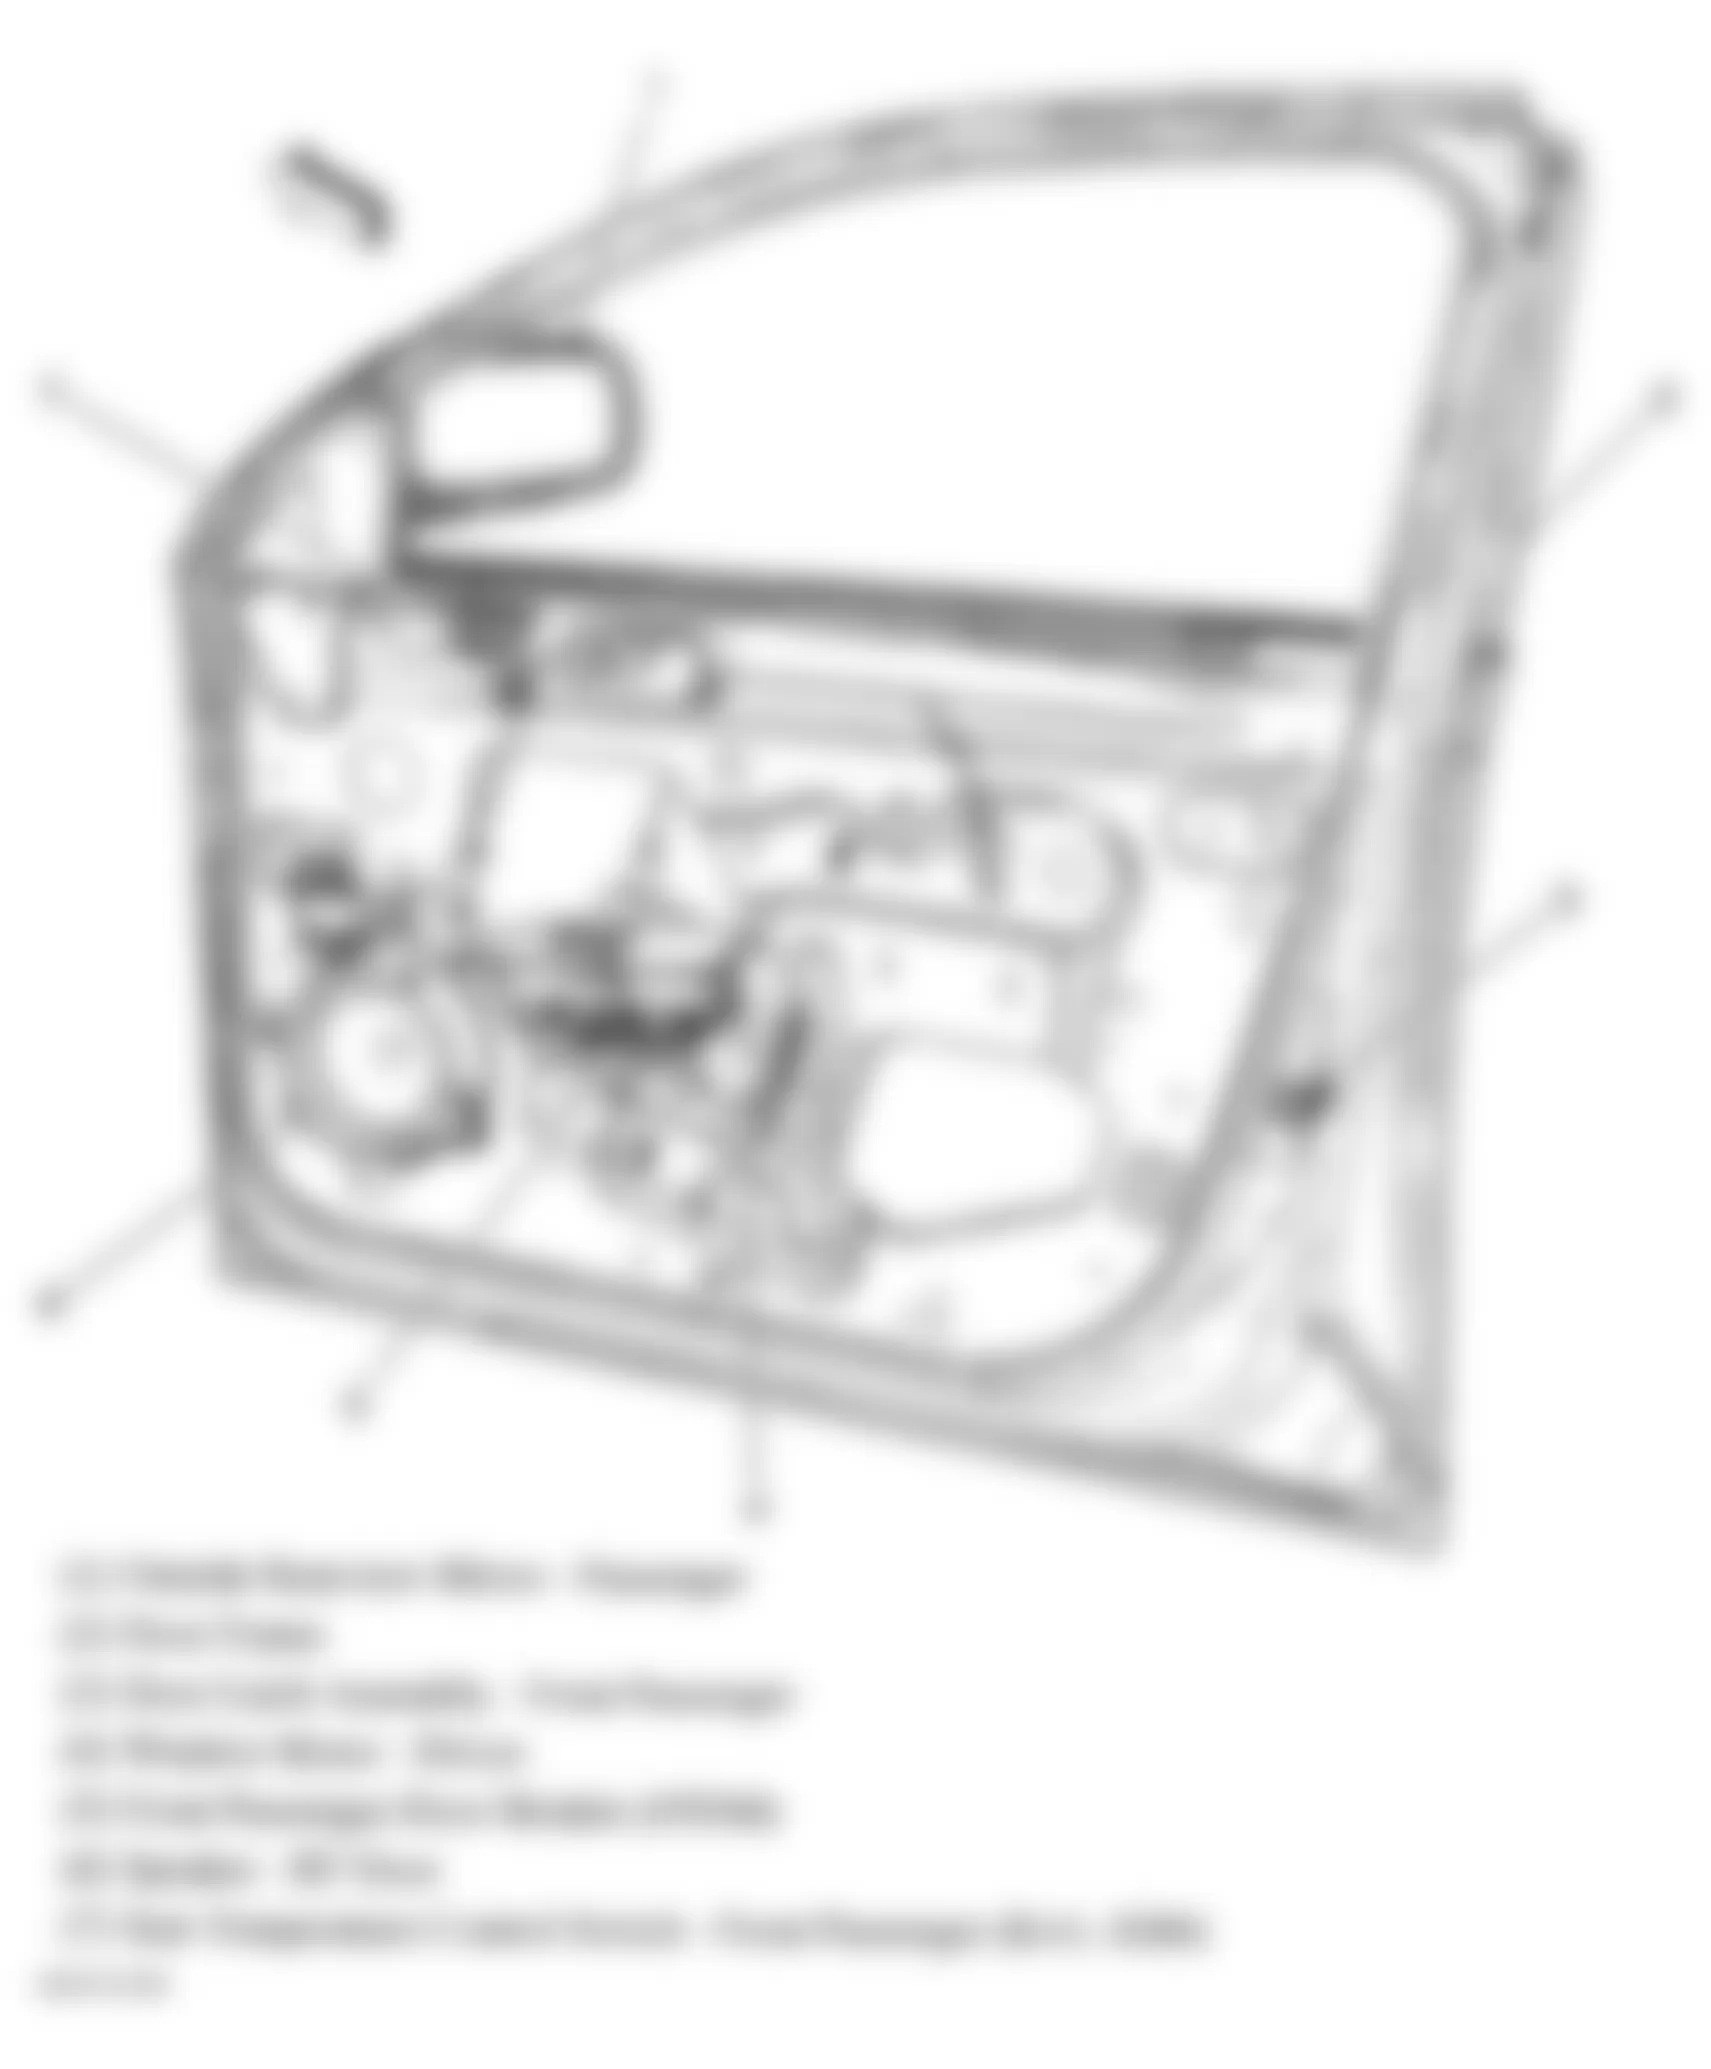 Buick Lucerne CXL 2006 - Component Locations -  Front Passengers Door